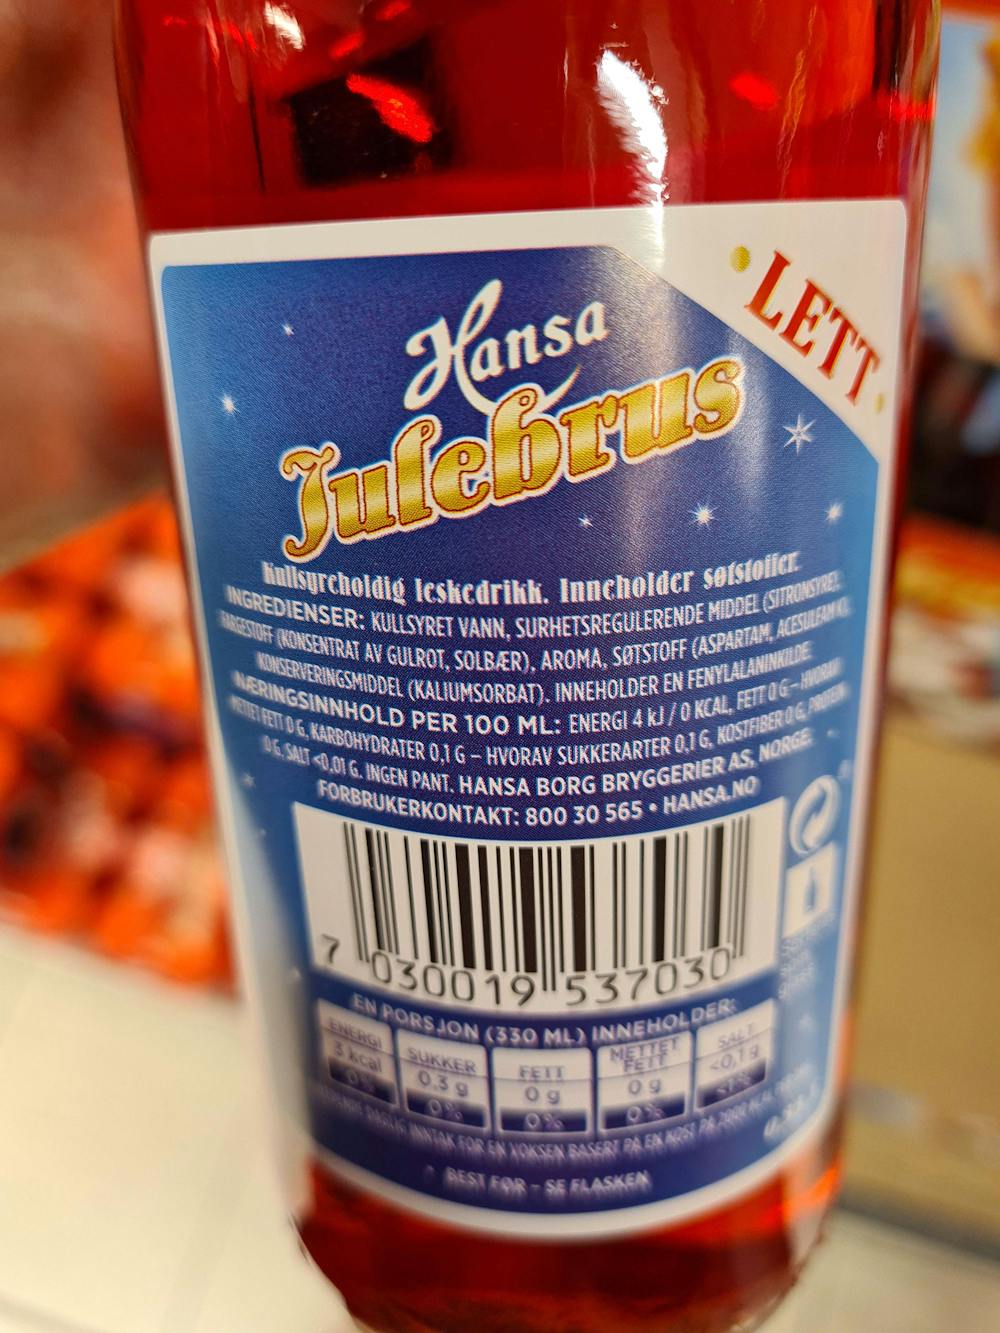 Ingredienslisten til Julebrus lett, Hansa